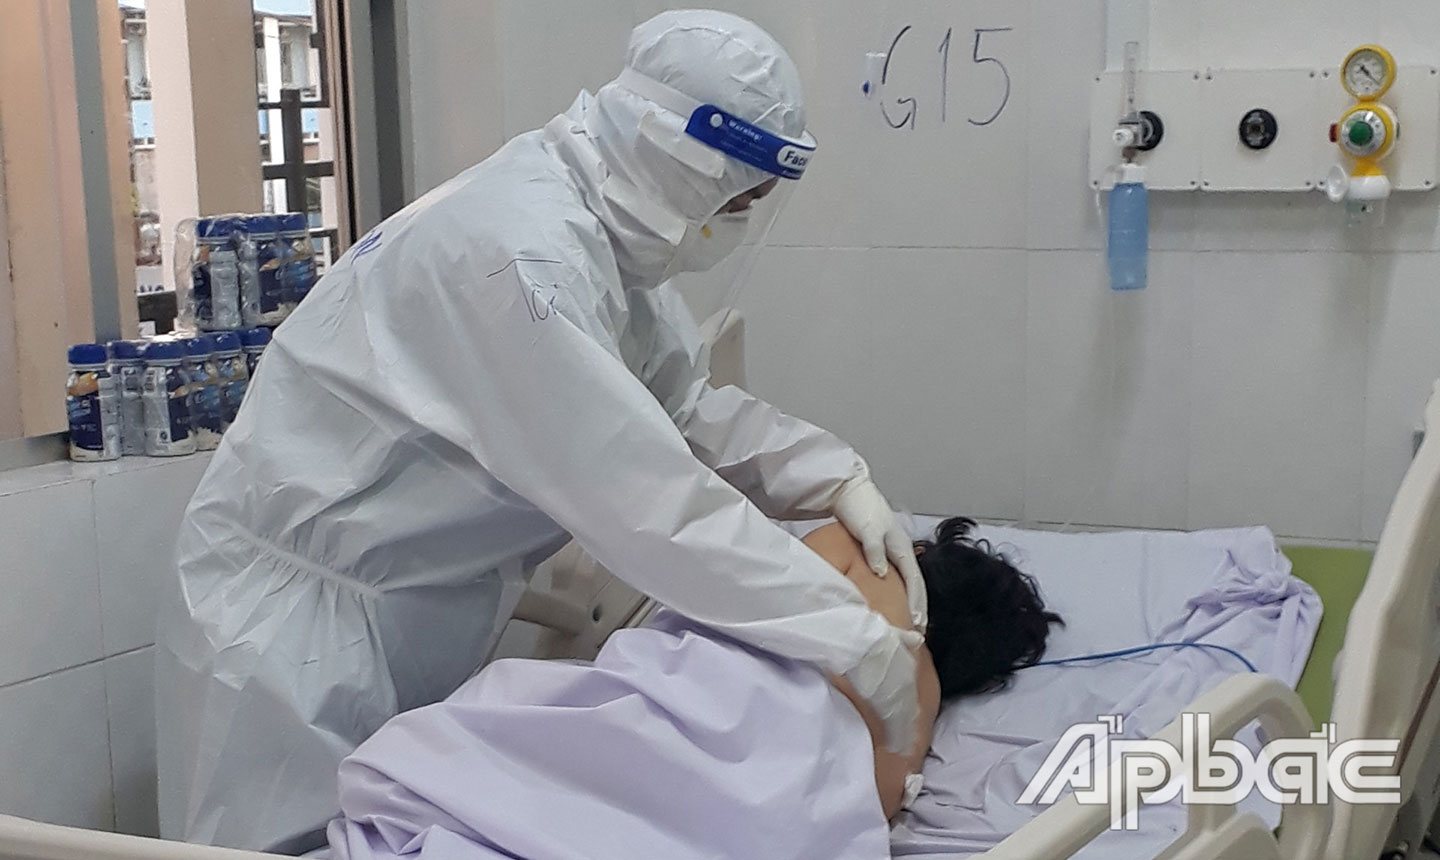 Các cơ sở điều trị có thể tập trung nguồn lực chăm sóc F0 nặng và rất nặng khi được giảm tải bằng cách quản lý điều trị F0 triệu chứng nhẹ và không triệu chứng tại nhà. (Ảnh chụp tại Trung tâm Hồi sức bệnh nhân Covid-19 tỉnh Tiền Giang).